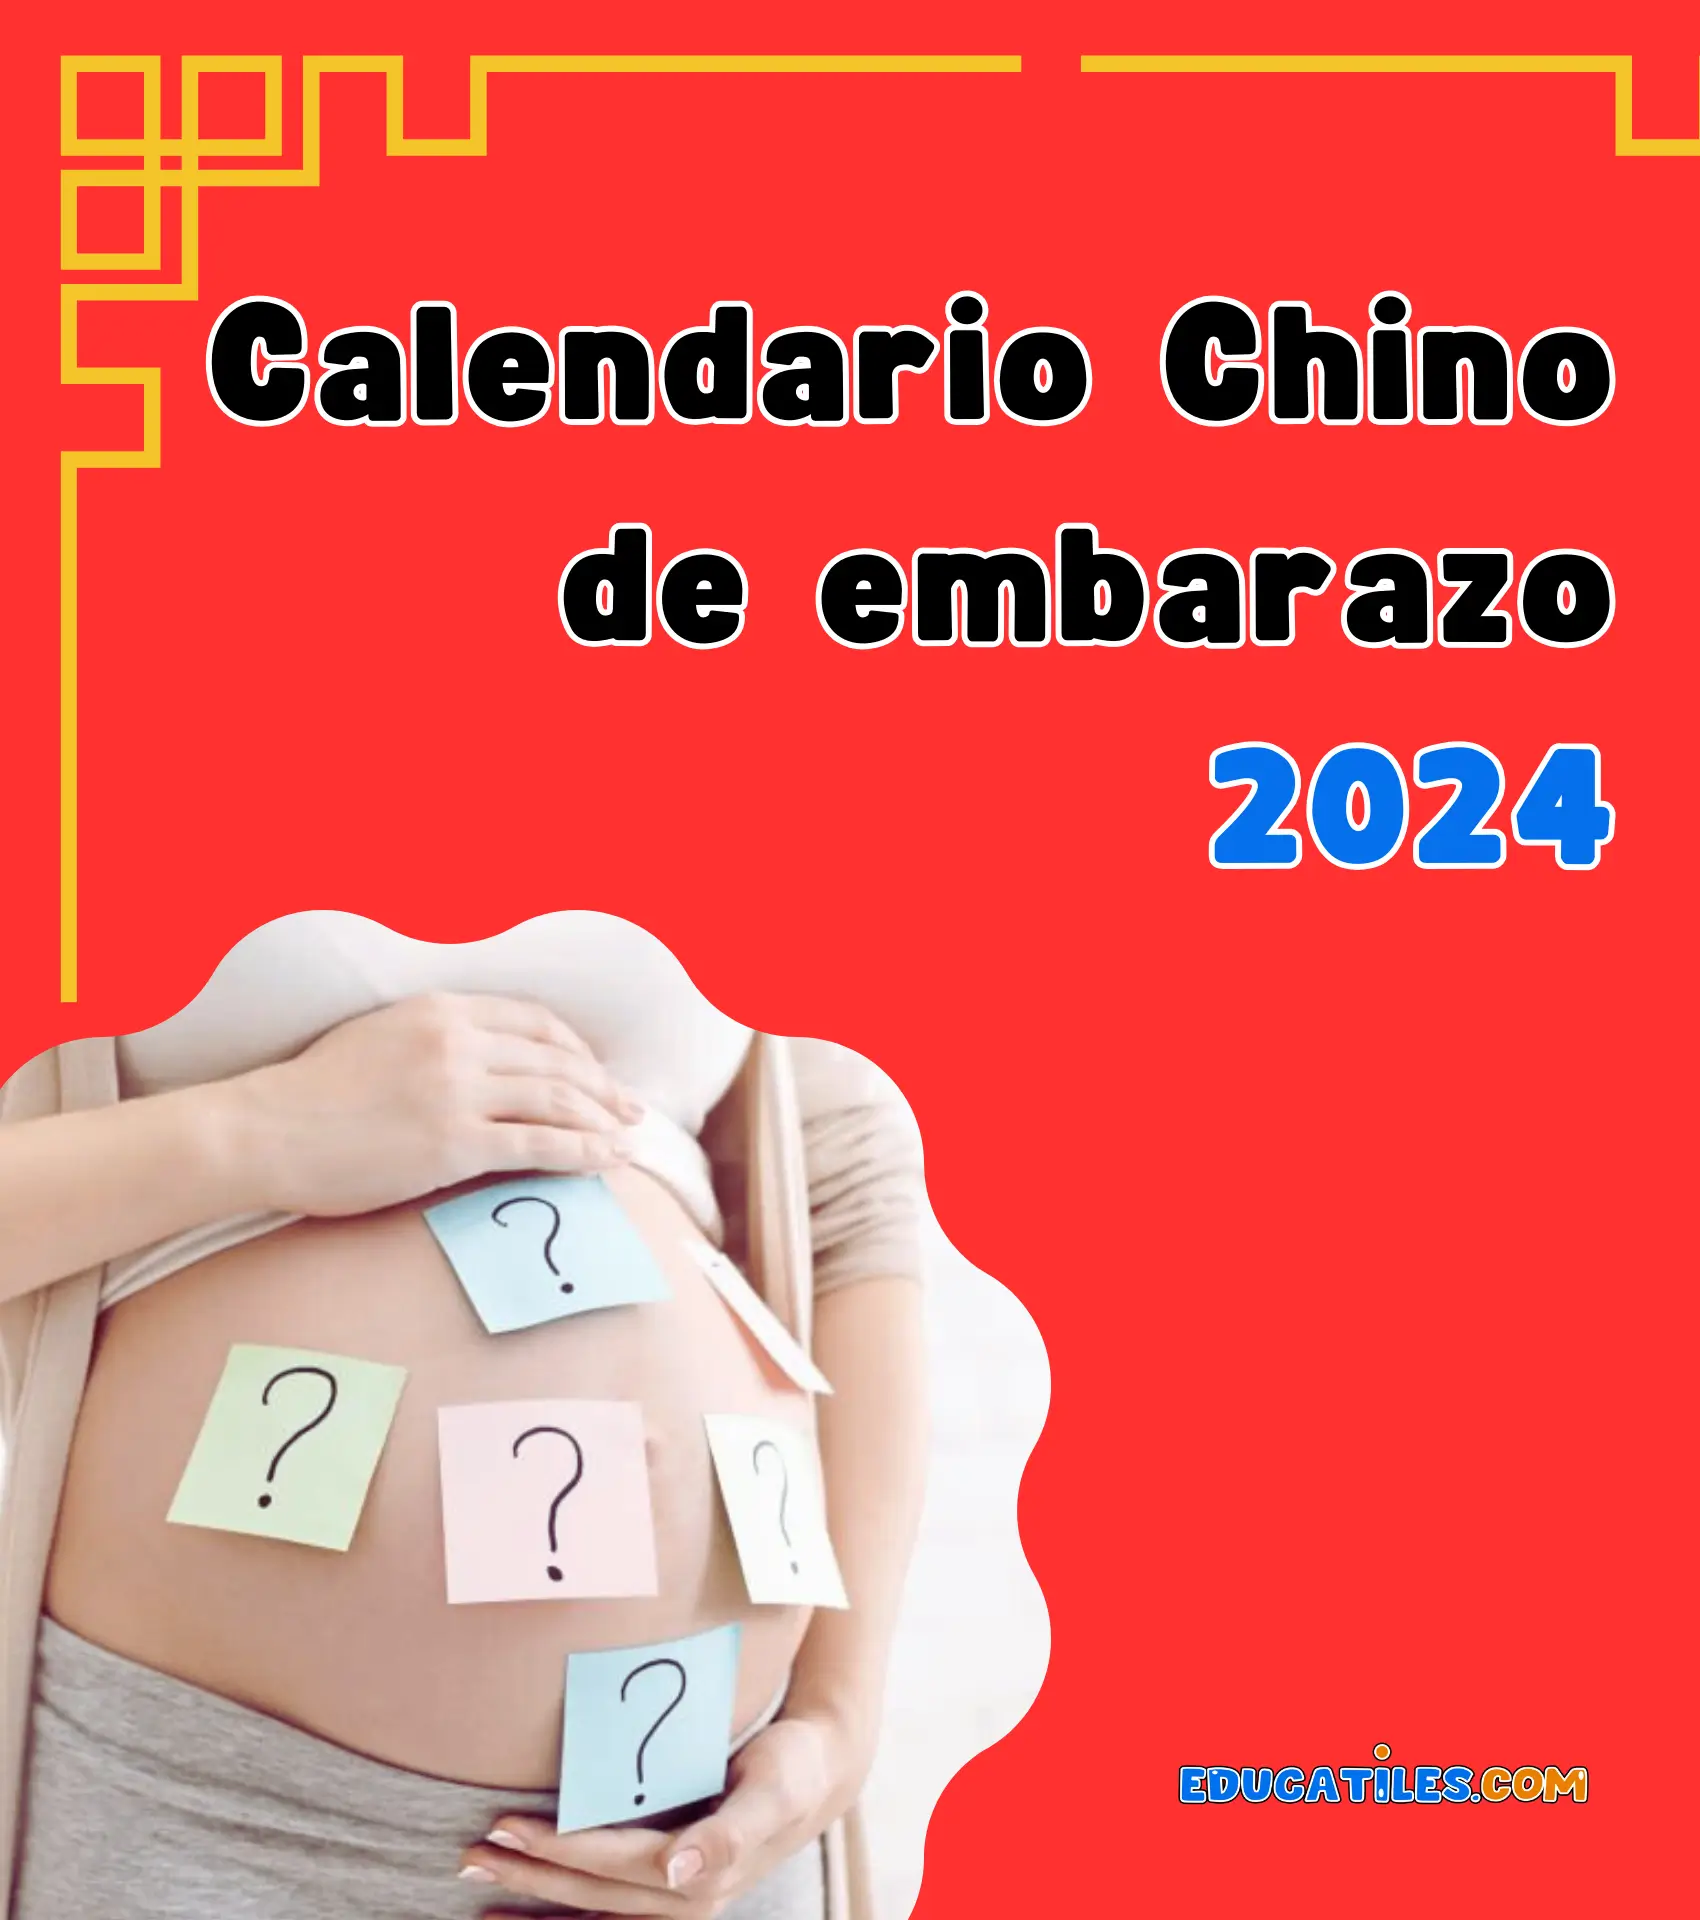 Calendario chino de embarazo 2024 Cuentos en español, Materiales